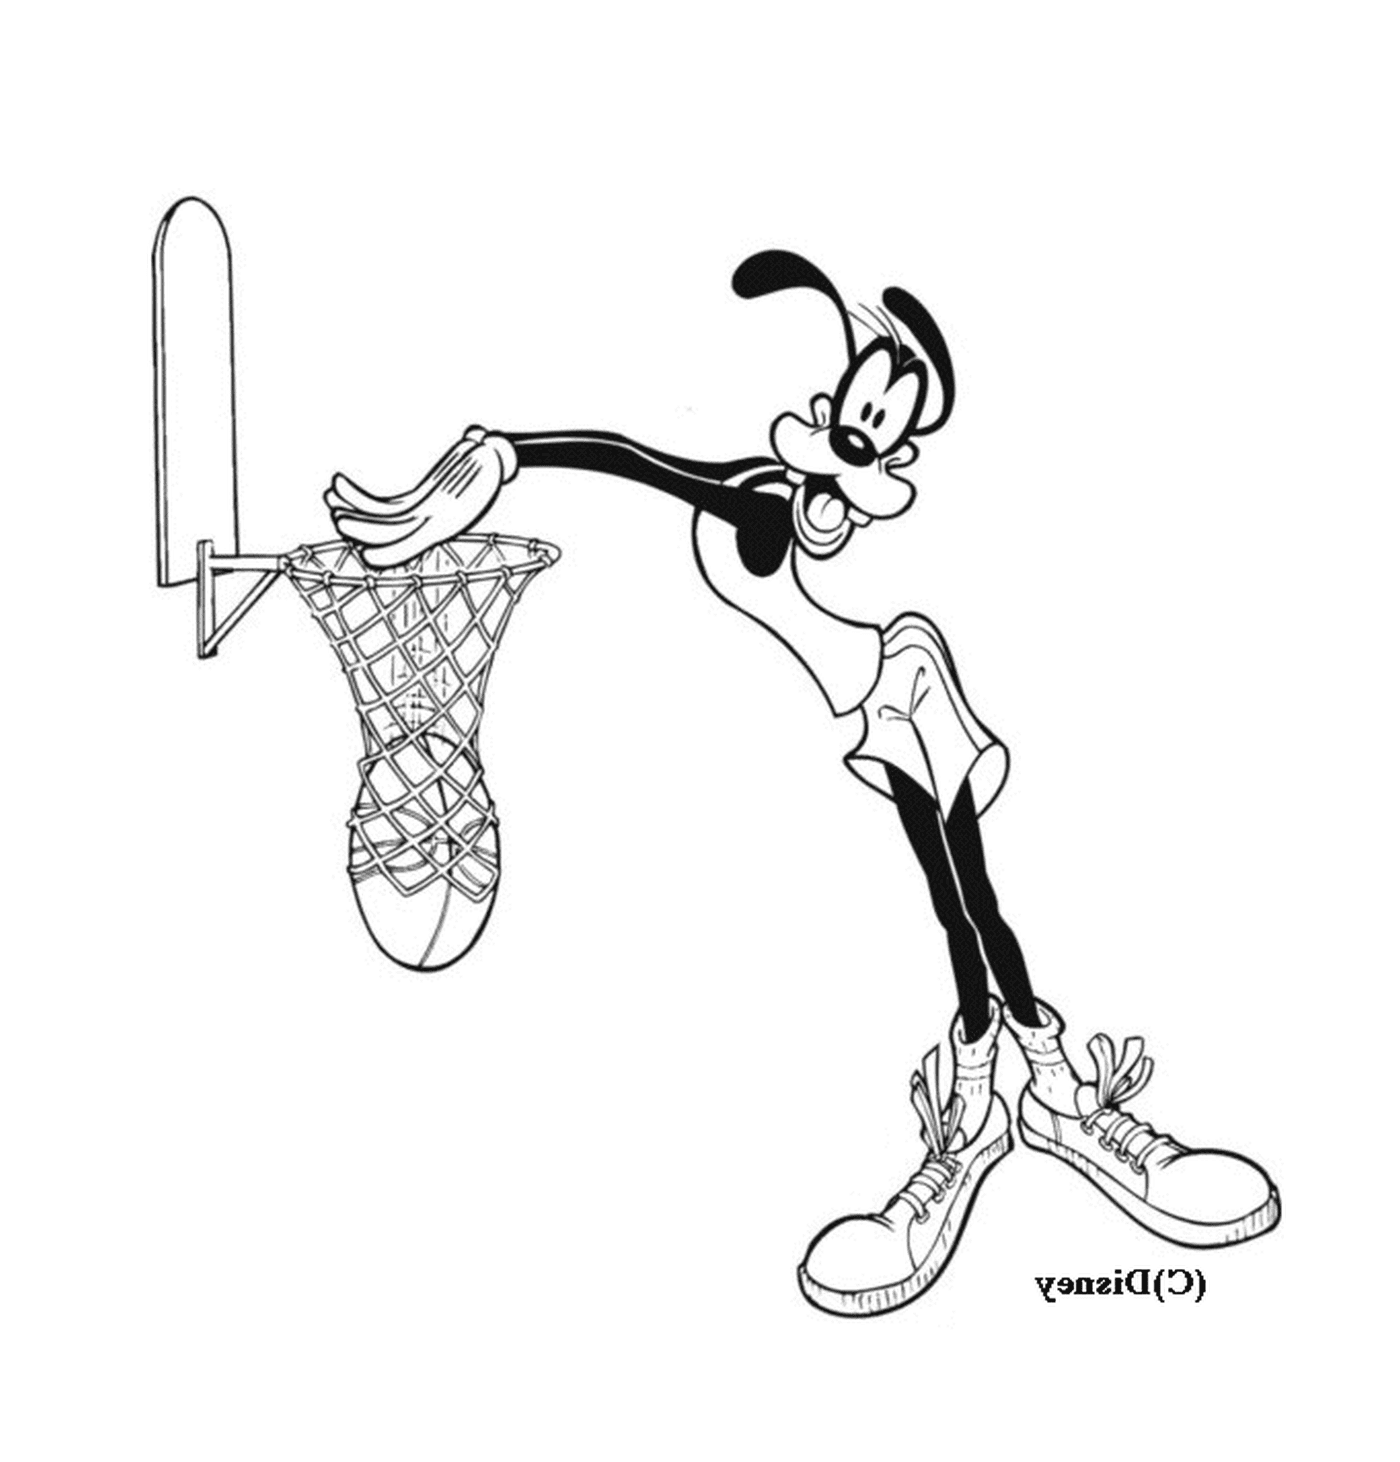  Jogo de basquetebol em um desenho animado Dingo 